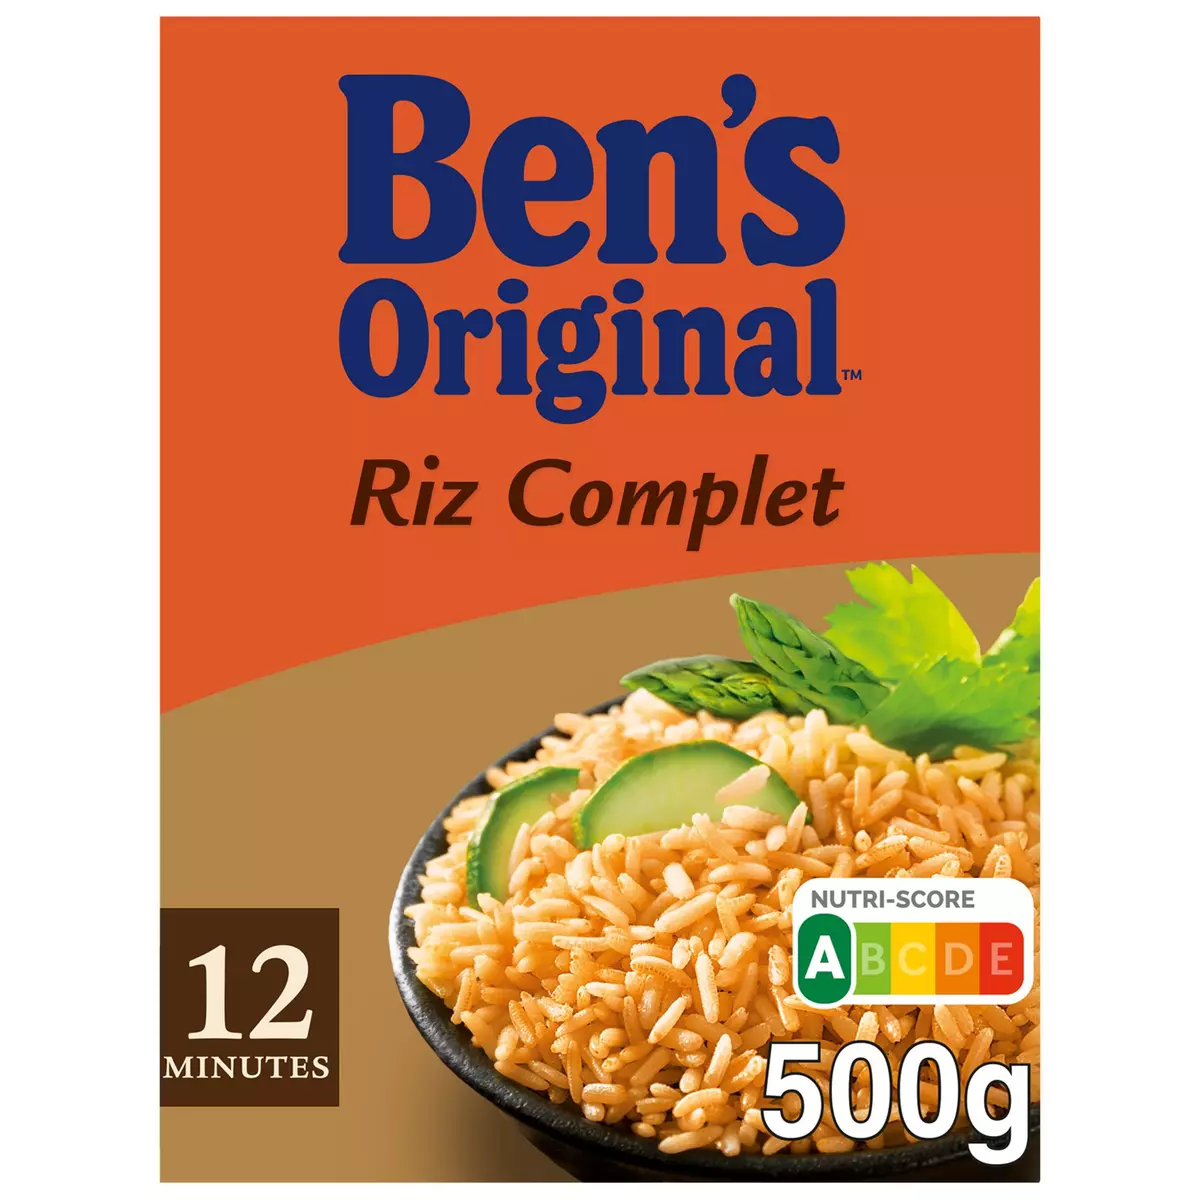 Riz complet uncle ben's sachet cuisson 10min 500g - Tous les